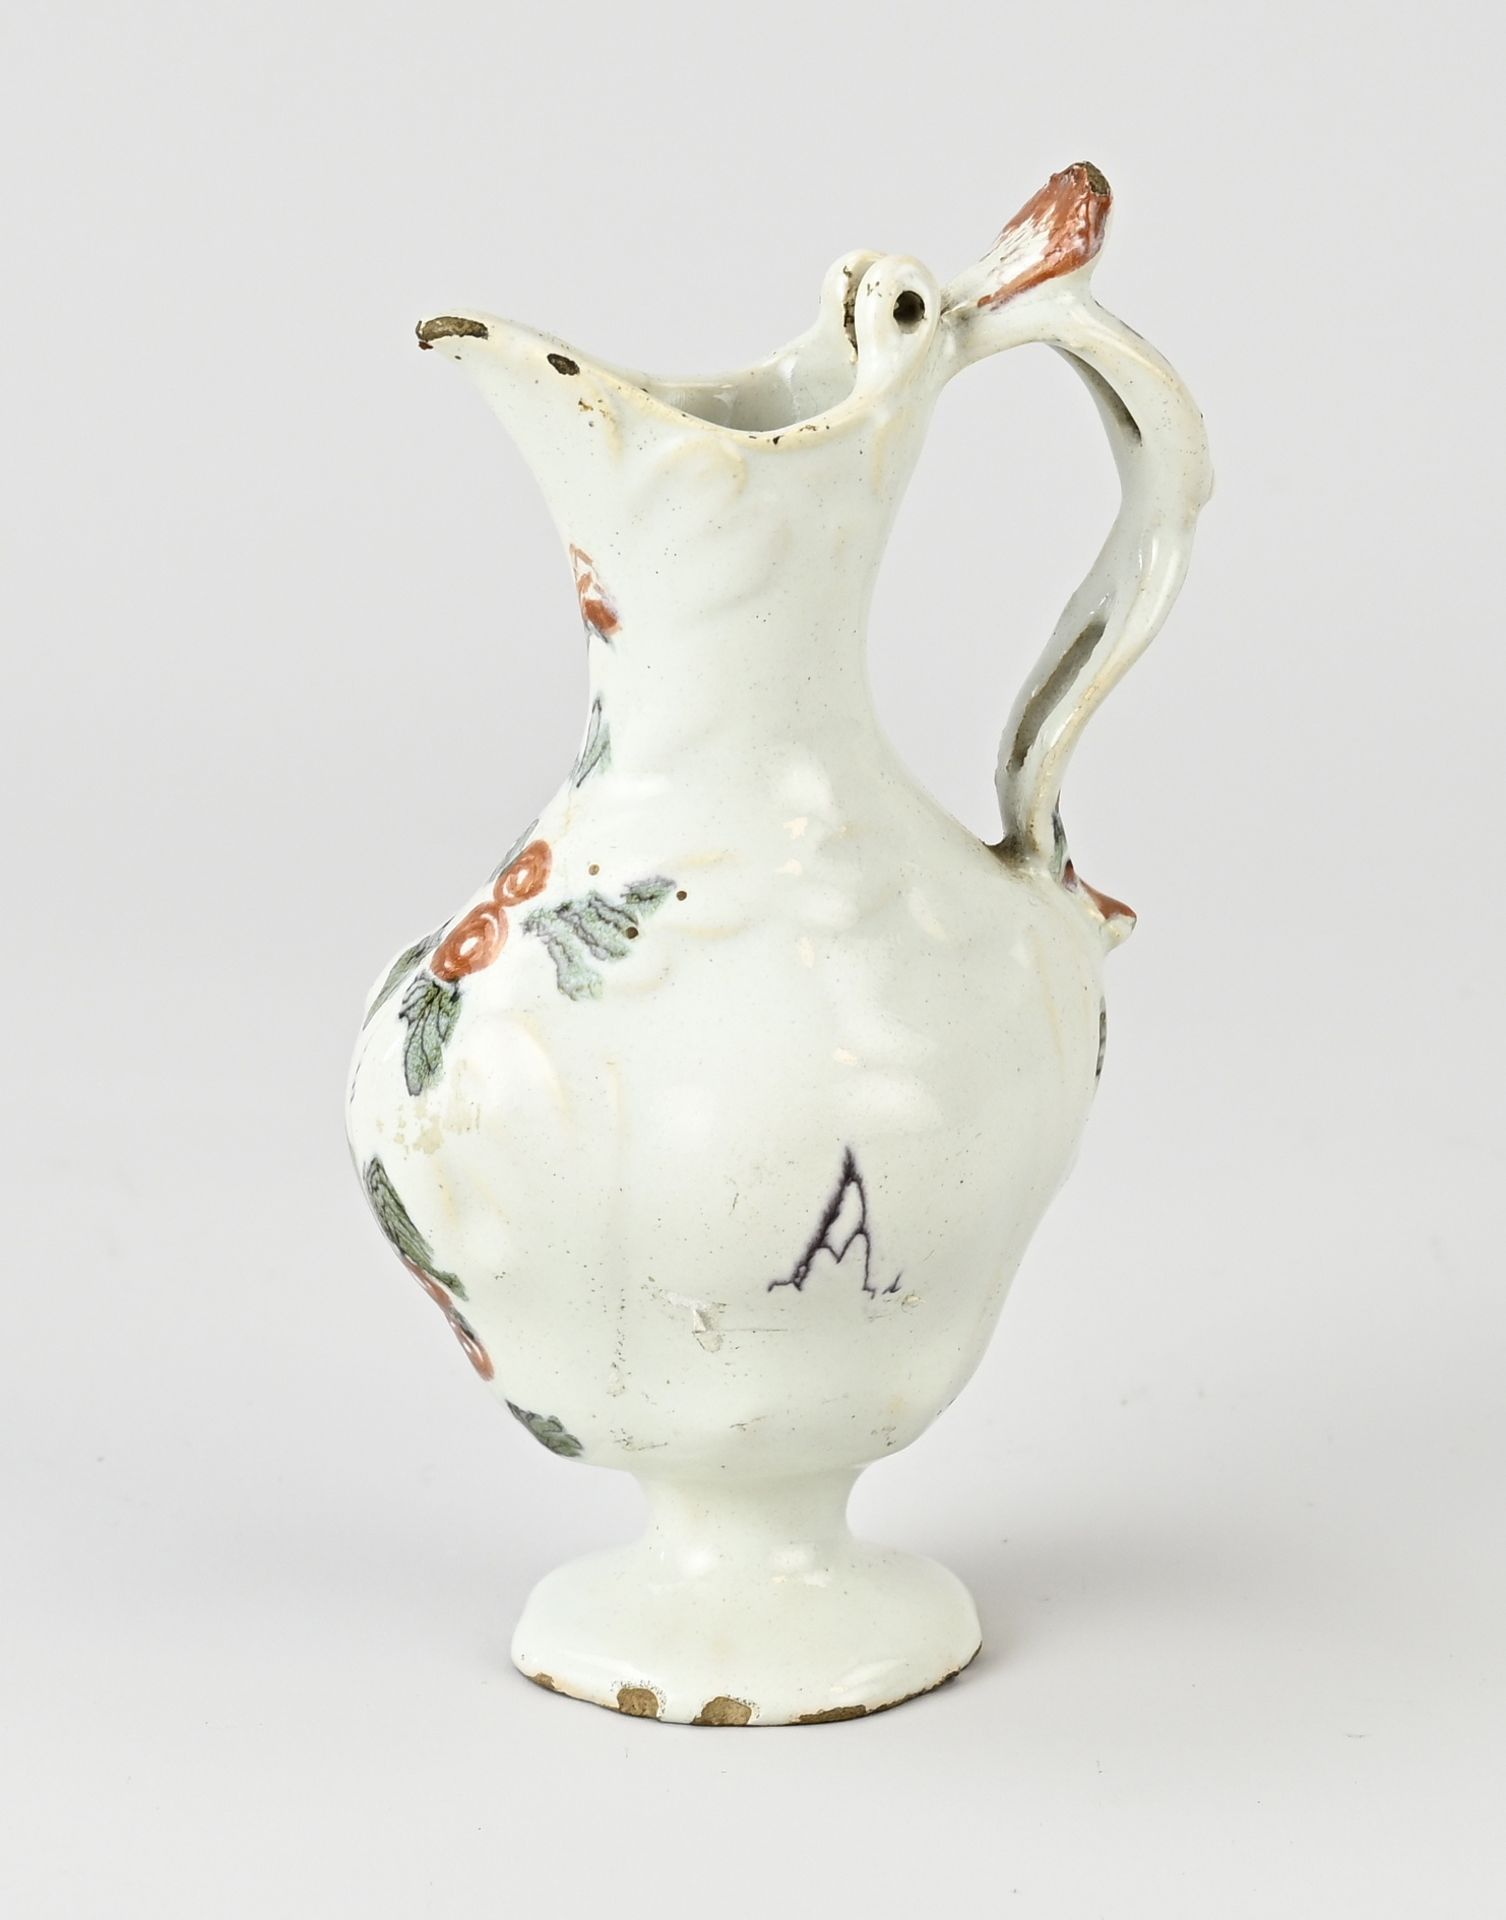 Rare 18th century Delft jug